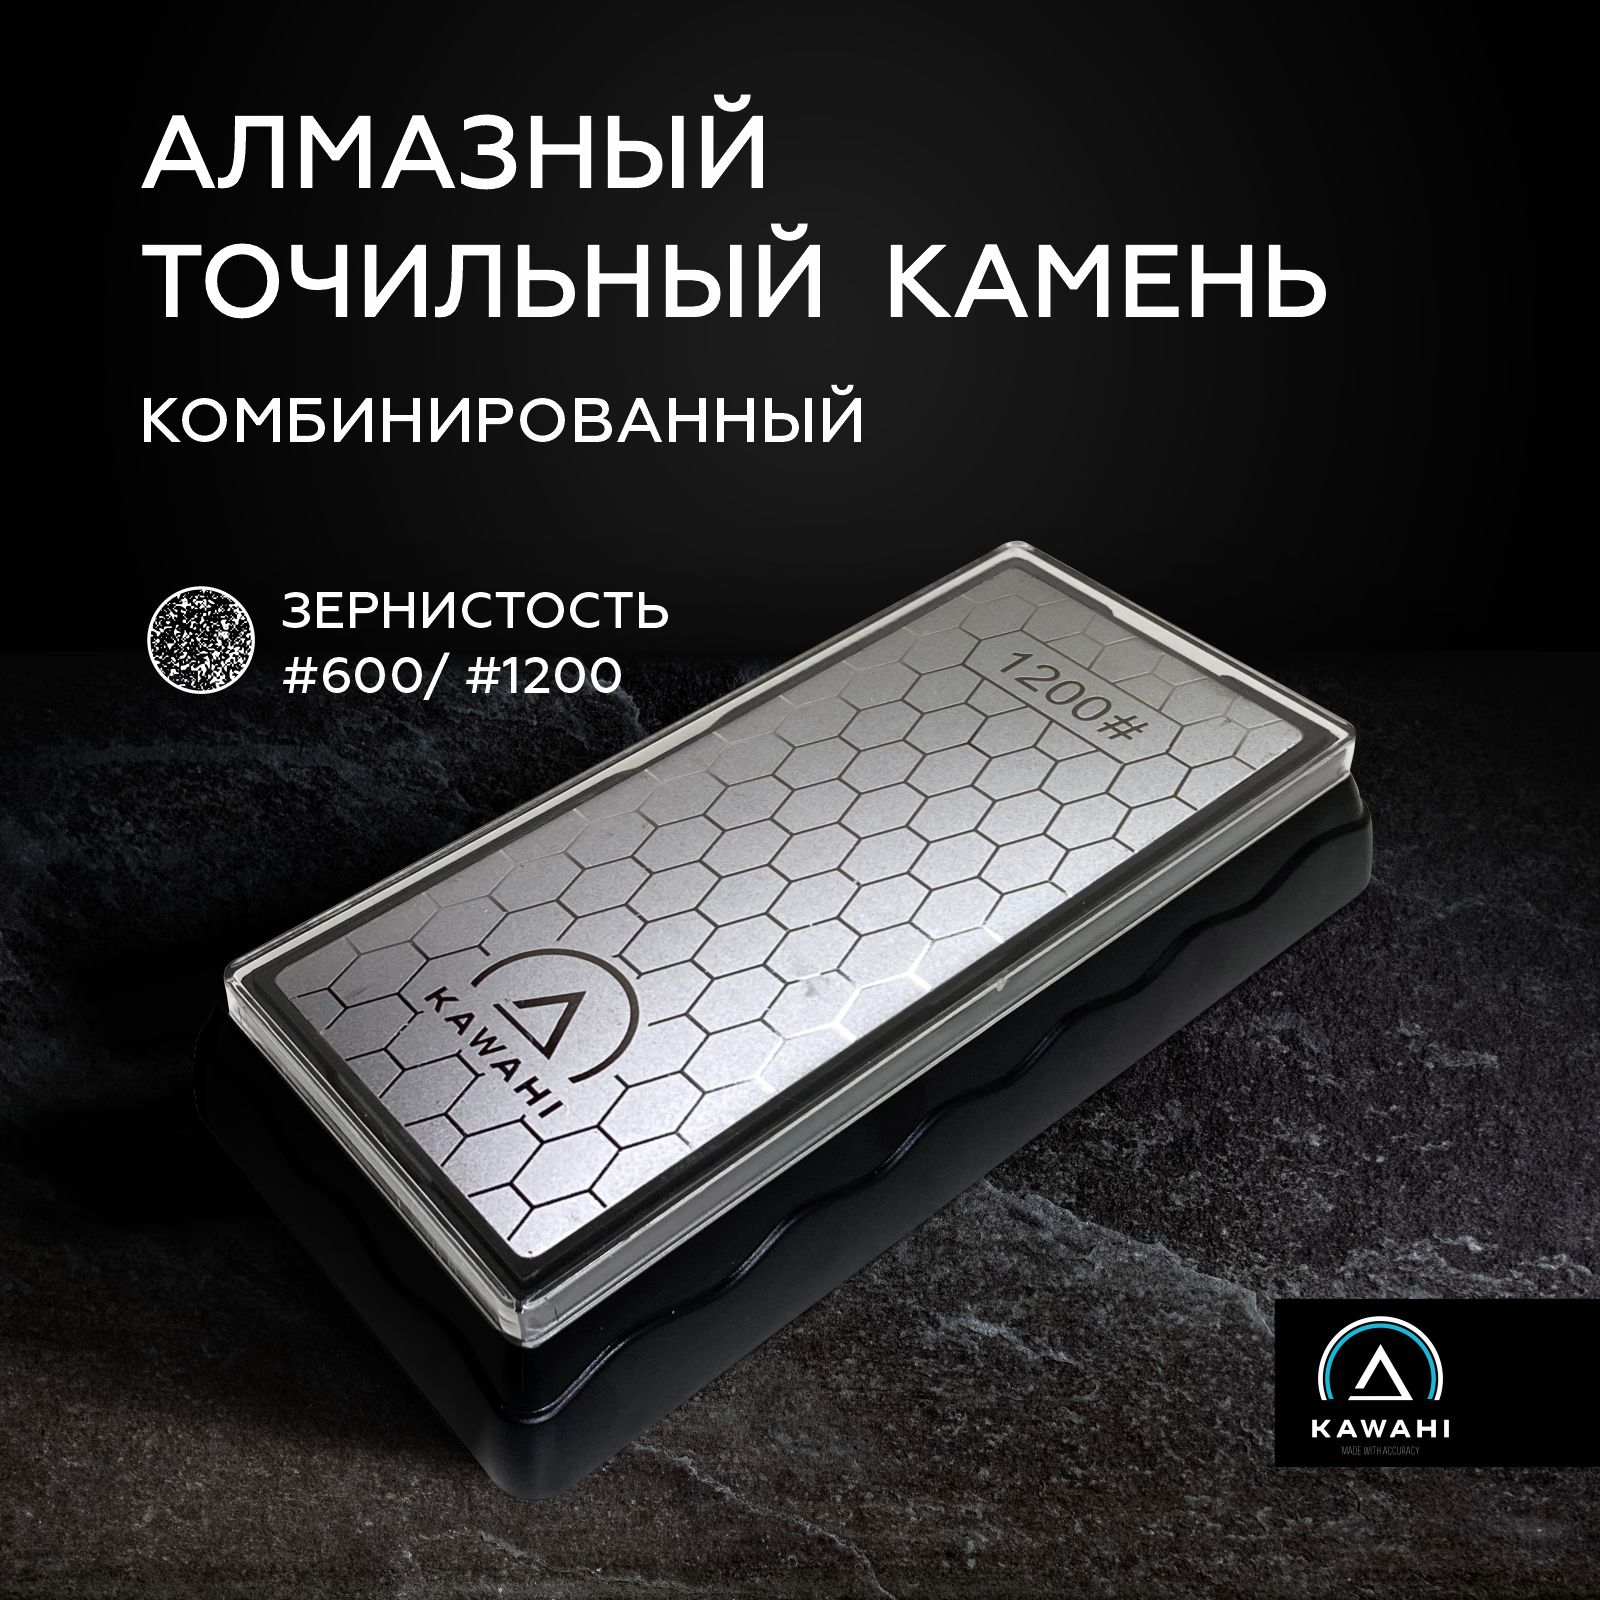 Камень точильный комбинированный алмазный KAWAHI точилка для правки кухонных ножей SA-001 купить в интернет-магазине, цены на Мегамаркет